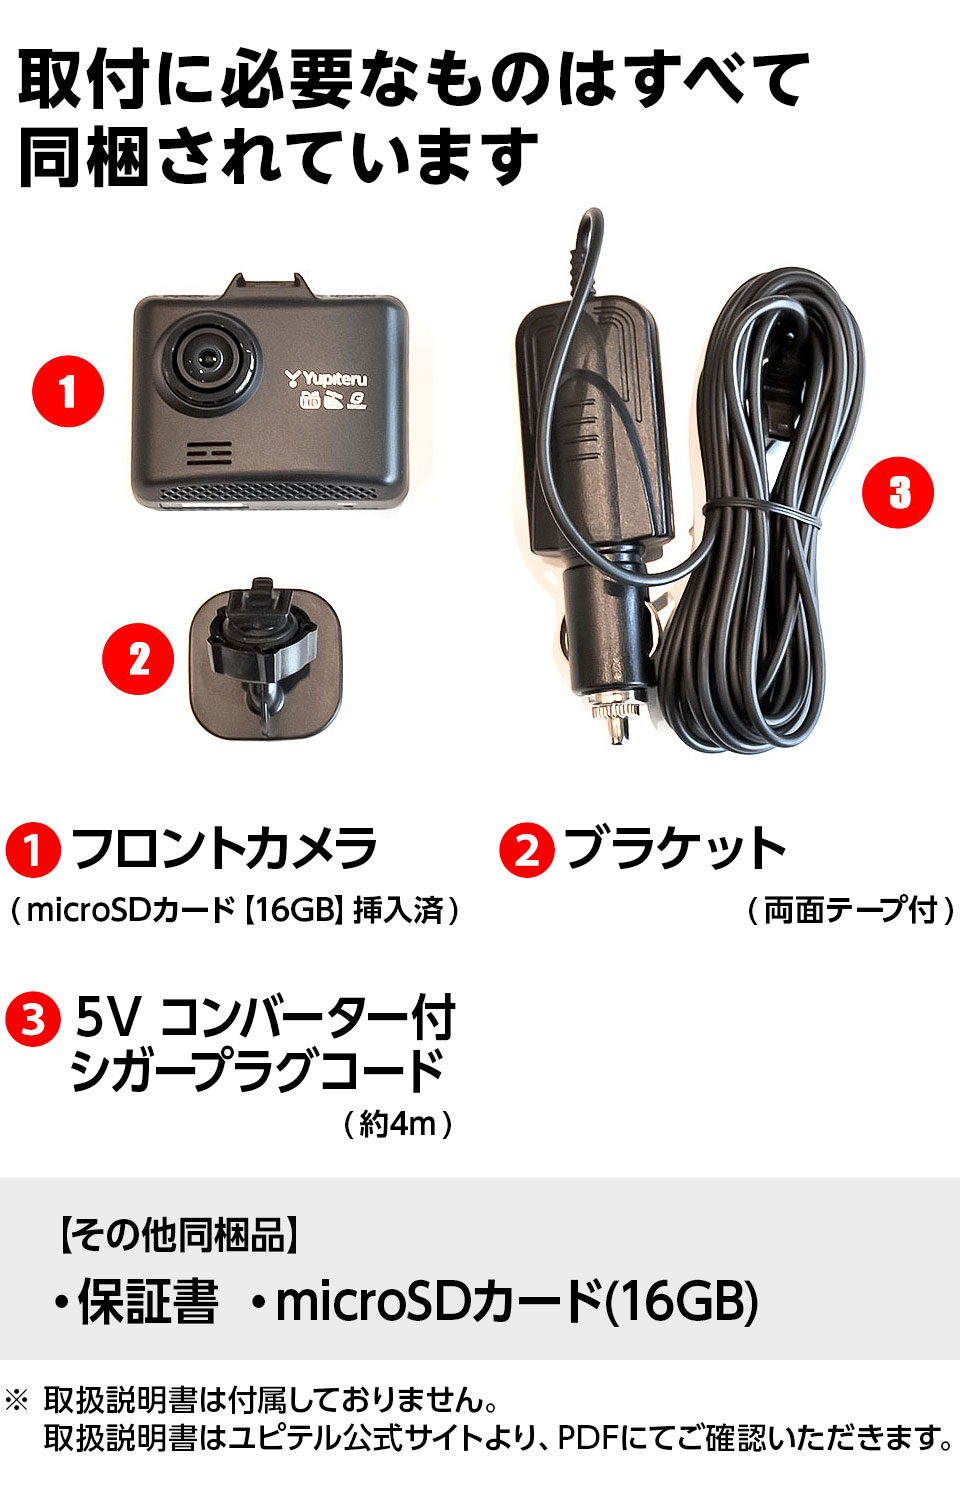 SN-ST3200P（1カメラドライブレコーダー） | Yupiteruダイレクト 